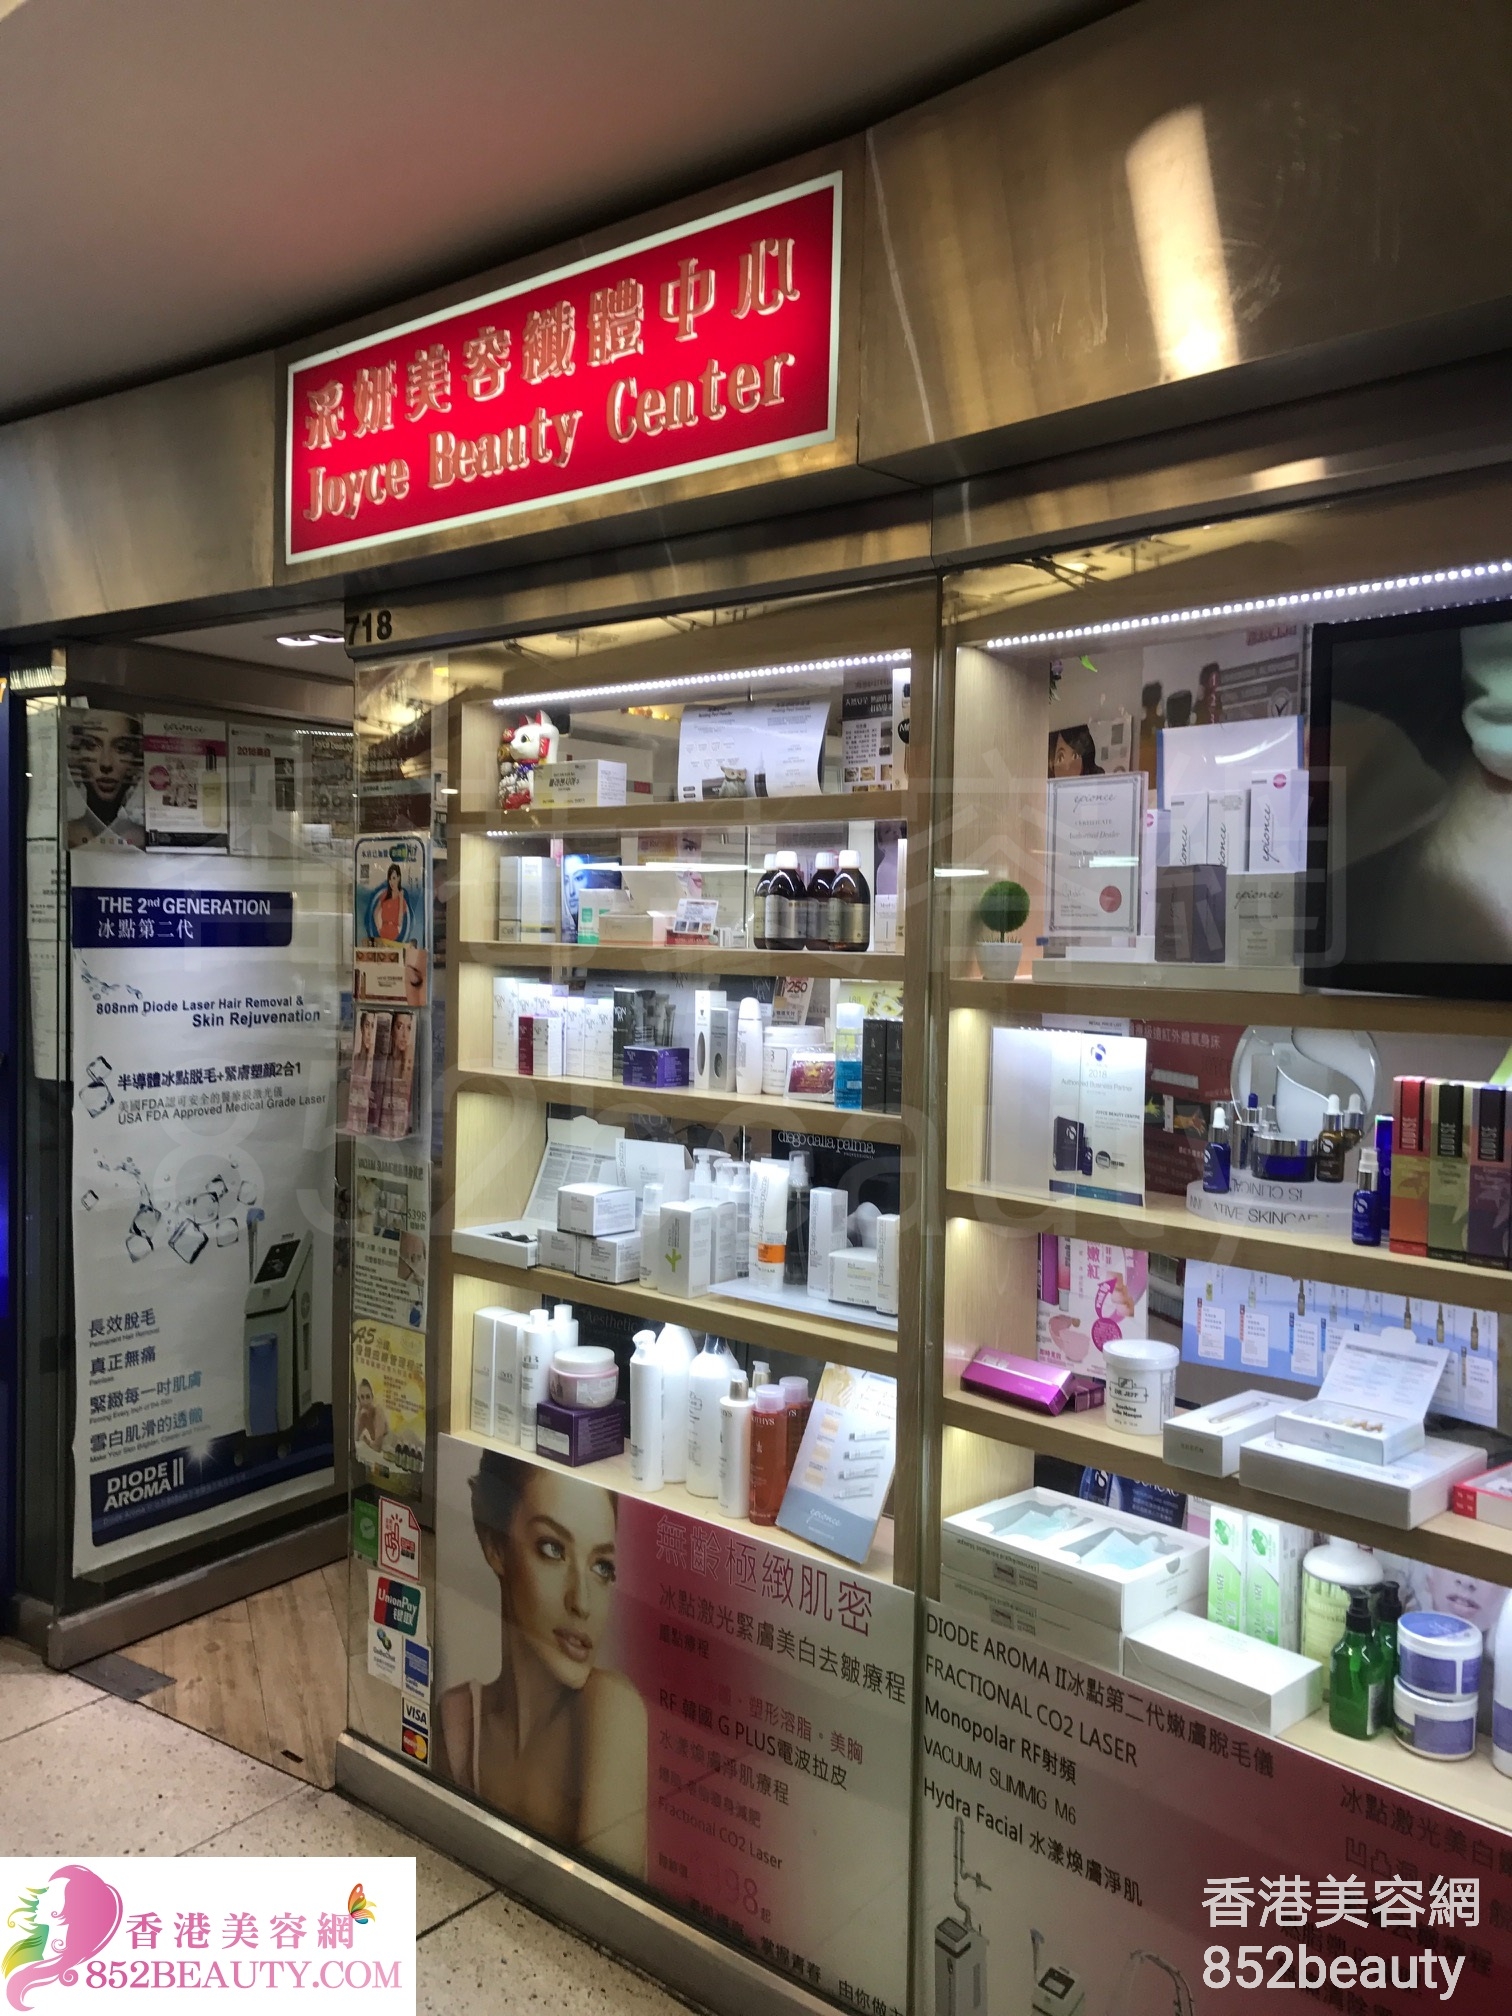 眼部护理: 采妍美容纖體中心 Joyce Beauty Center (西九龍中心)